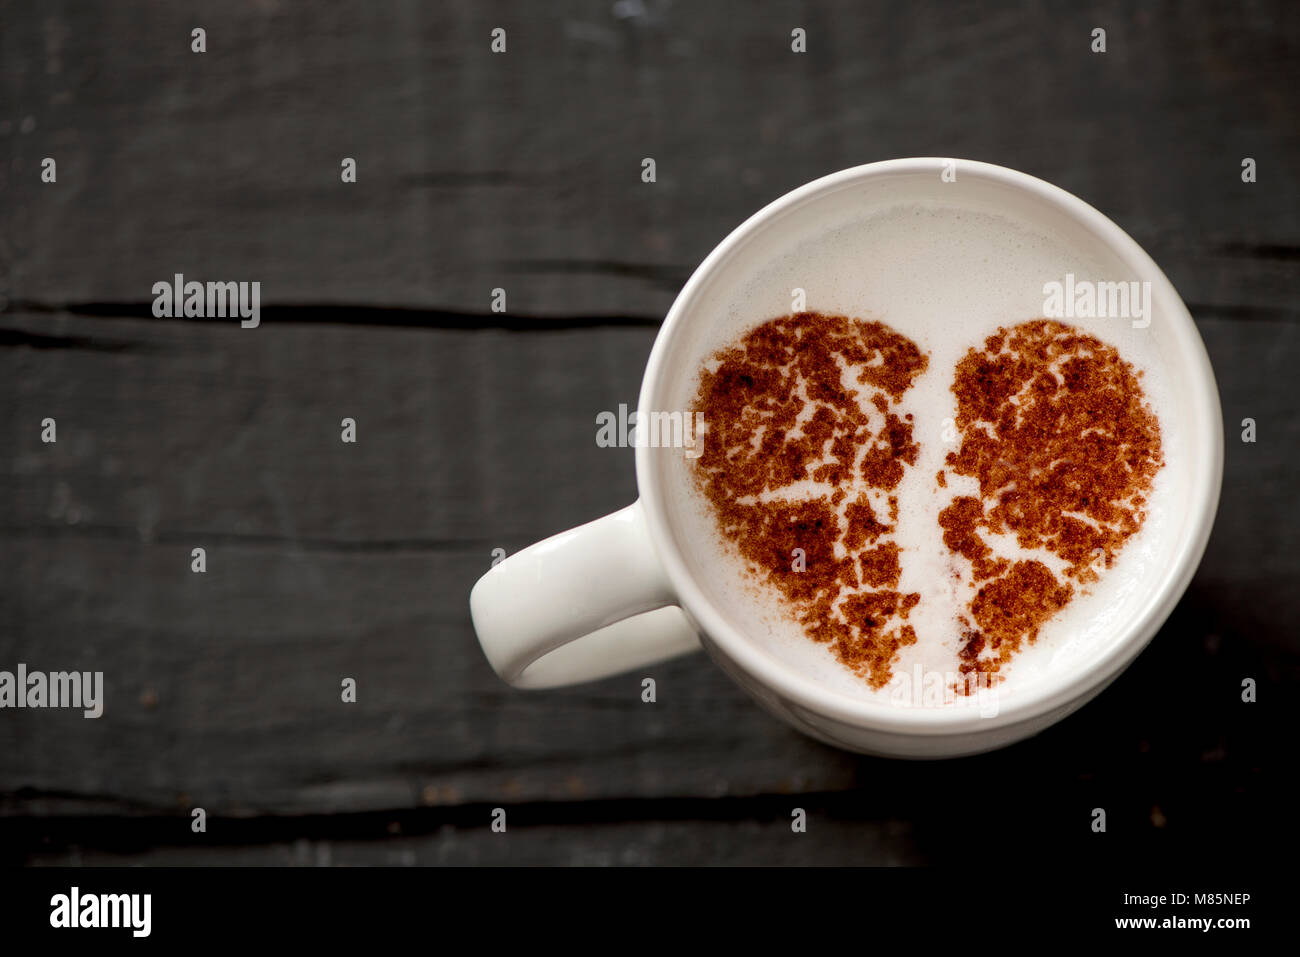 Capture d'un grand angle d'une tasse de Cappuccino en céramique blanche avec un cœur brisé dessiné avec du cacao en poudre sur sa mousse de lait, sur une table en bois rustique gris foncé Banque D'Images